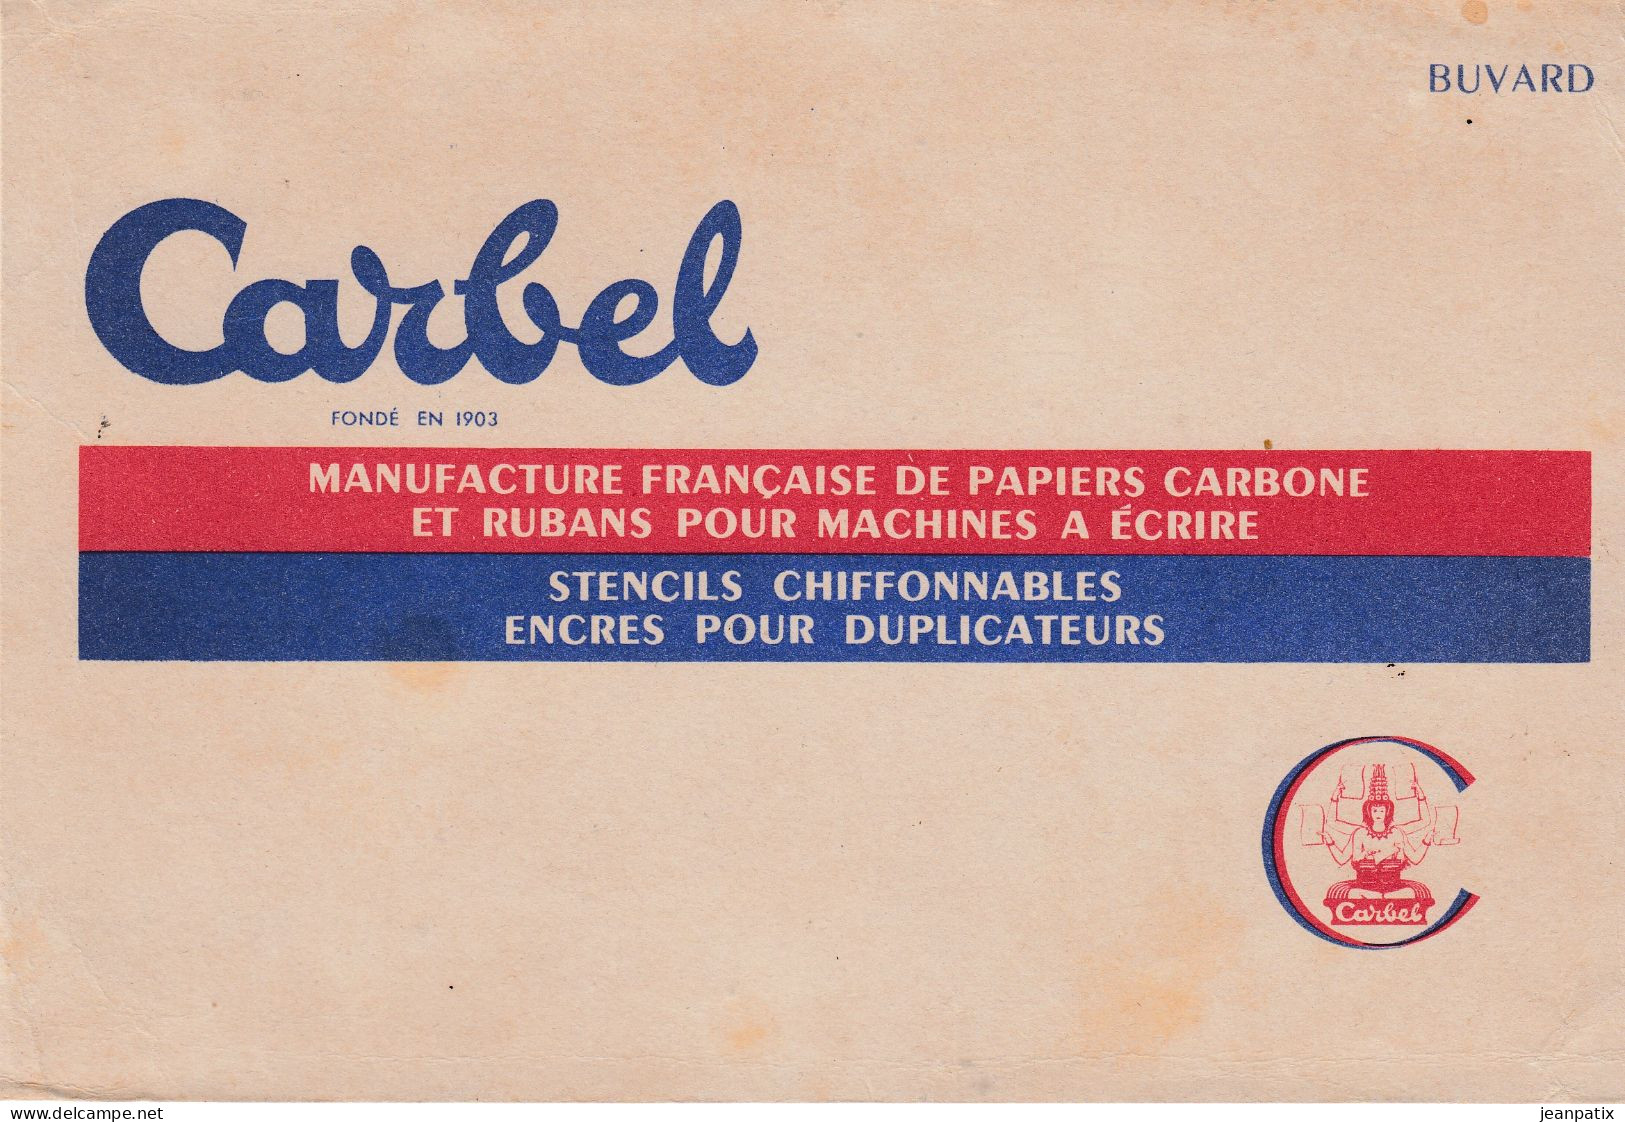 BUVARD & BLOTTER - CARBEL - Manufacture De Papier Carbone Our Machine à écrire - Chocolat